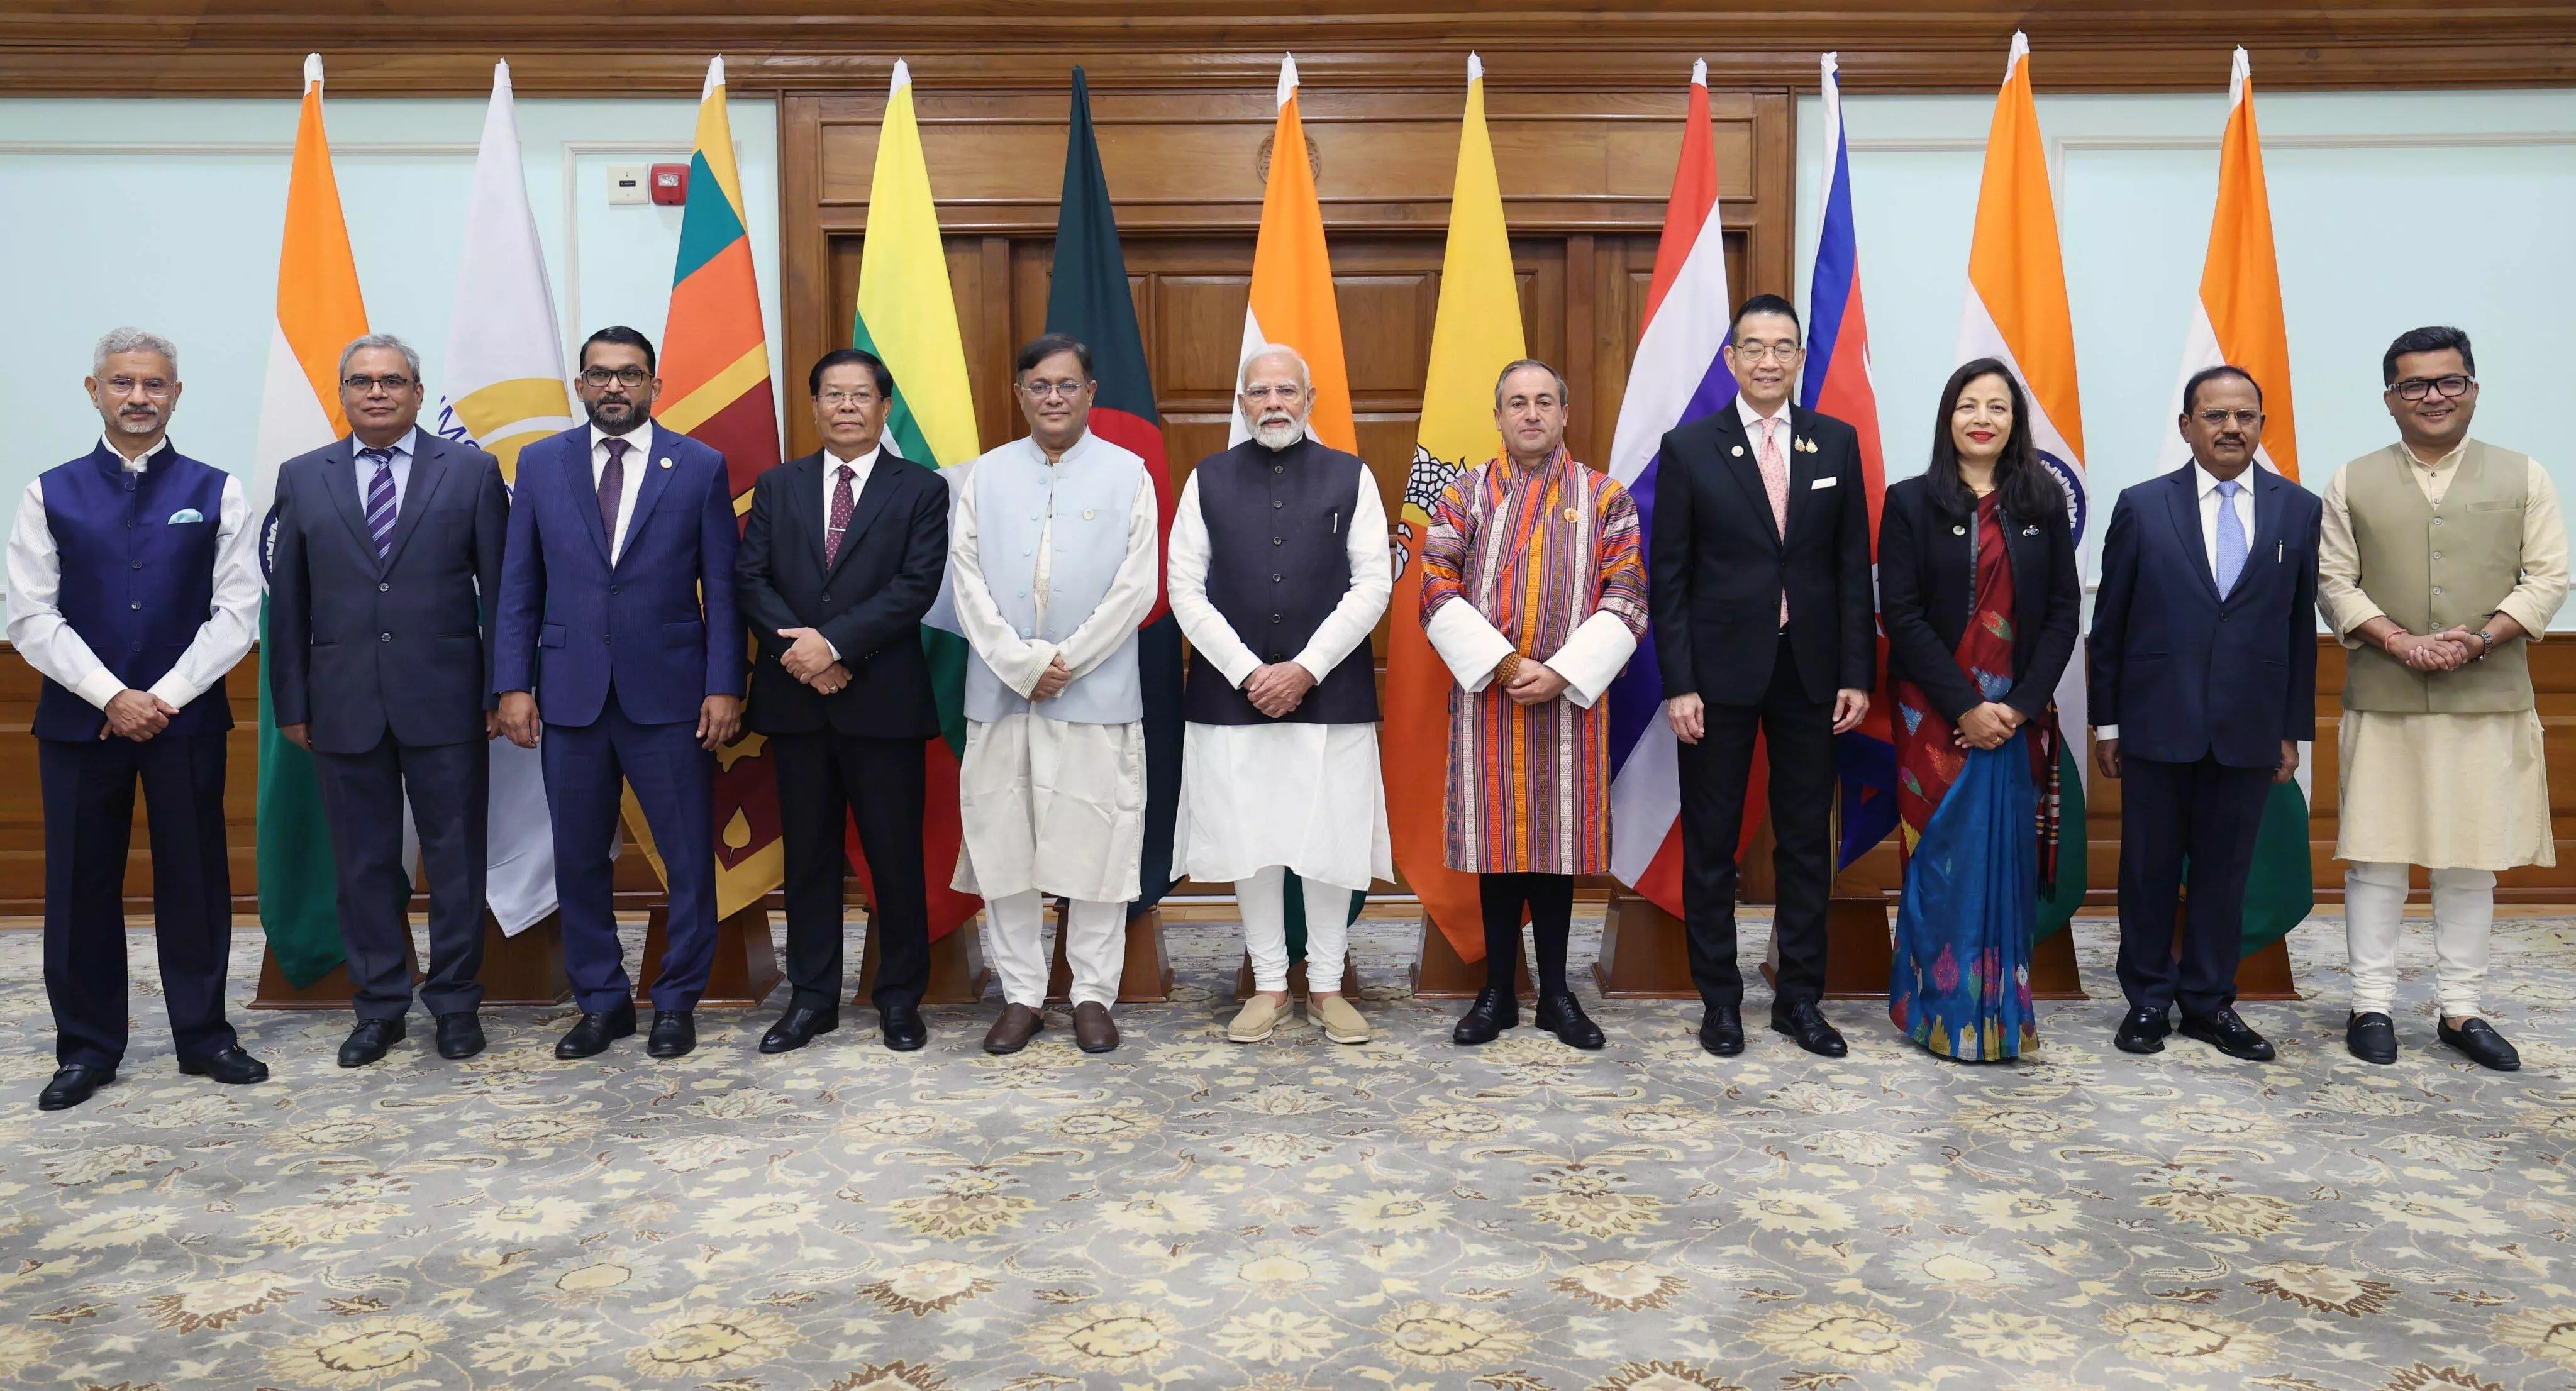 बंगाल की खाड़ी के देशों के विदेश मंत्रियों की पीएम मोदी के साथ बैठक